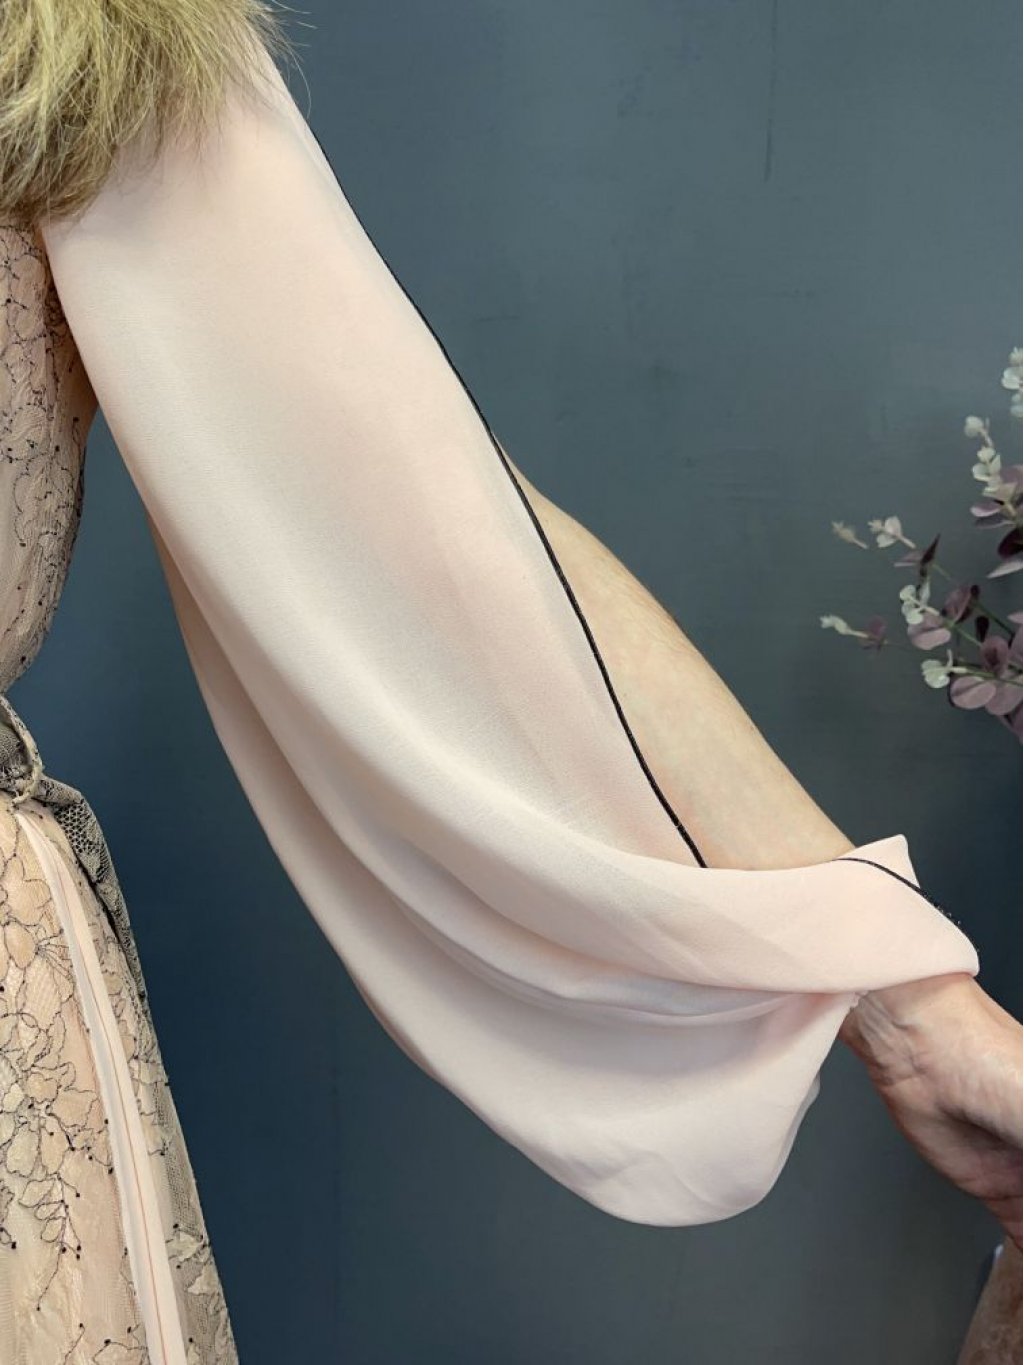 Šaty Nickolia Morozov růžové s krajkou dlouhé